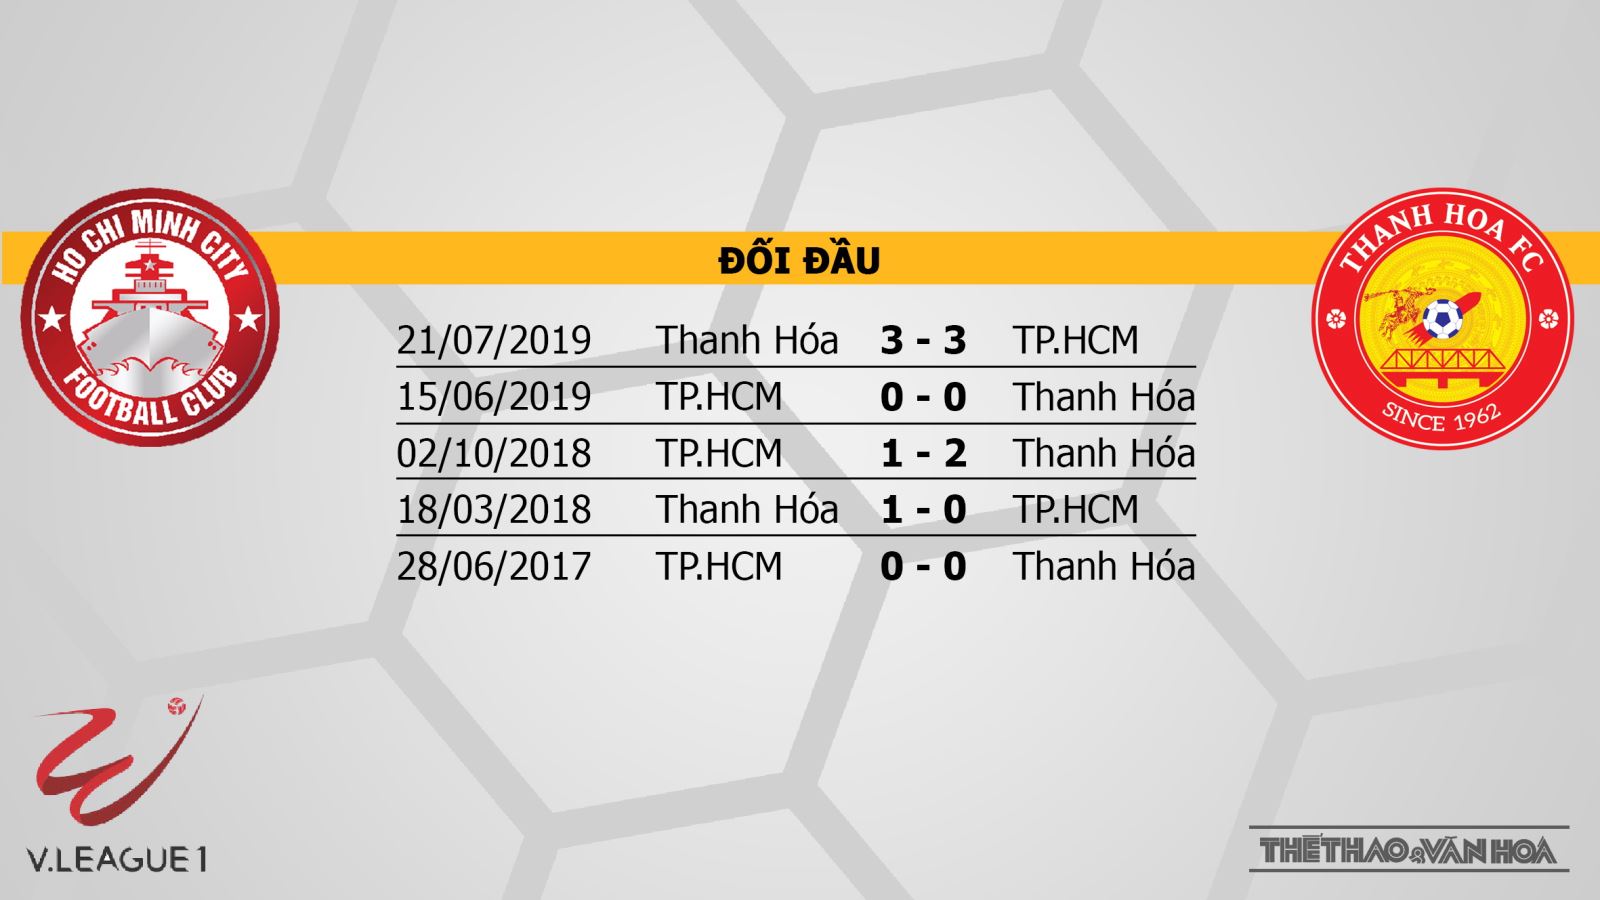 TP Hồ Chí Minh vs Thanh Hóa: Vòng 2 LS V-League 2020 - 19h00, 15/03/2020 - Giữ vững phong độ | News by Thaiger